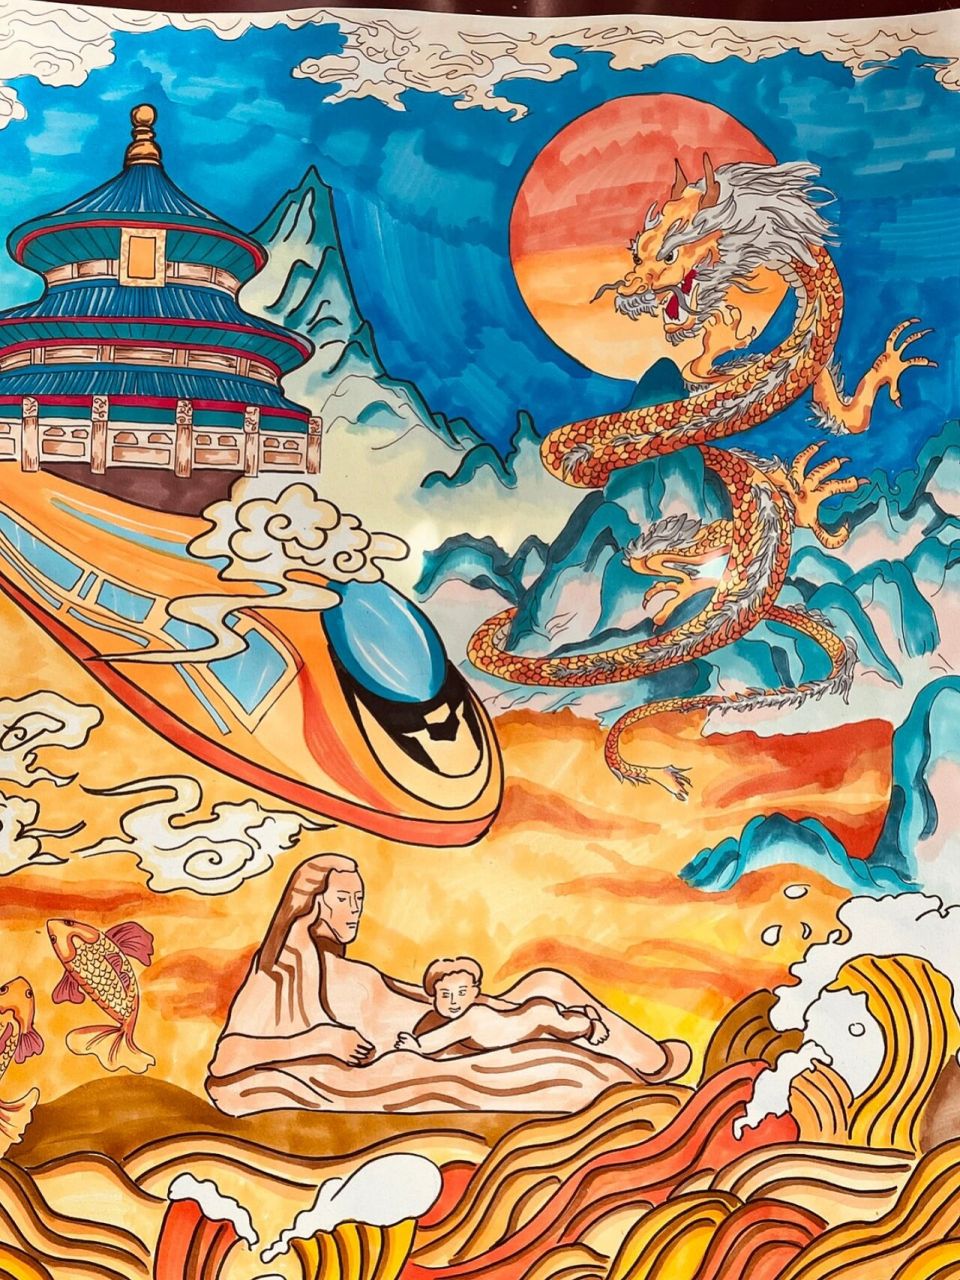 黄河文化绘画作品图片